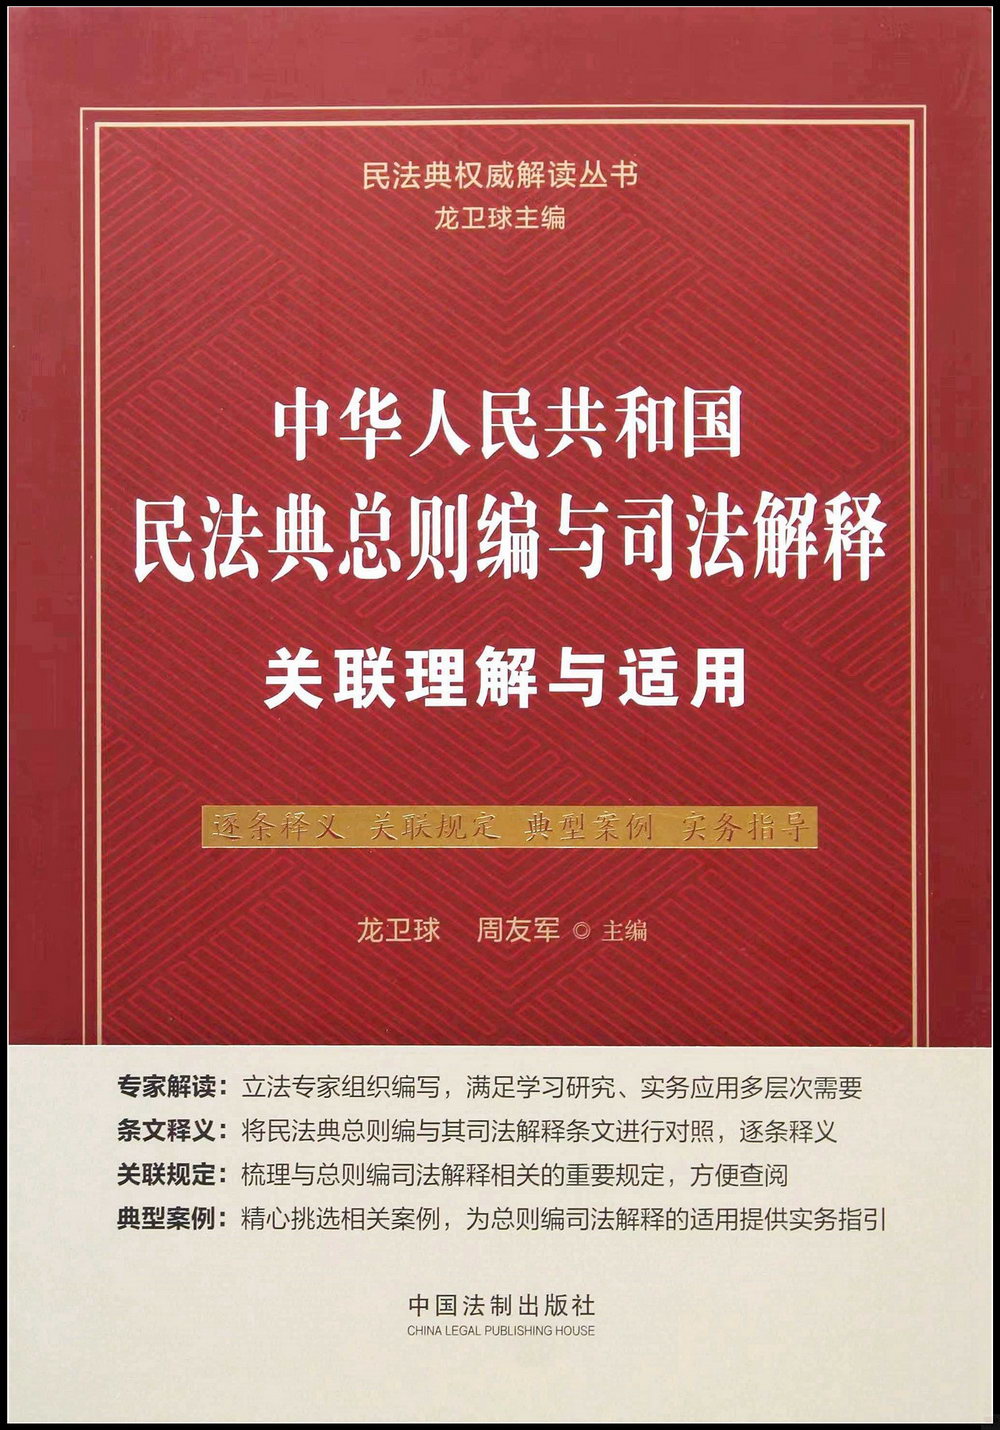 中華人民共和國民法典總則編與司法解釋關聯理解與適用